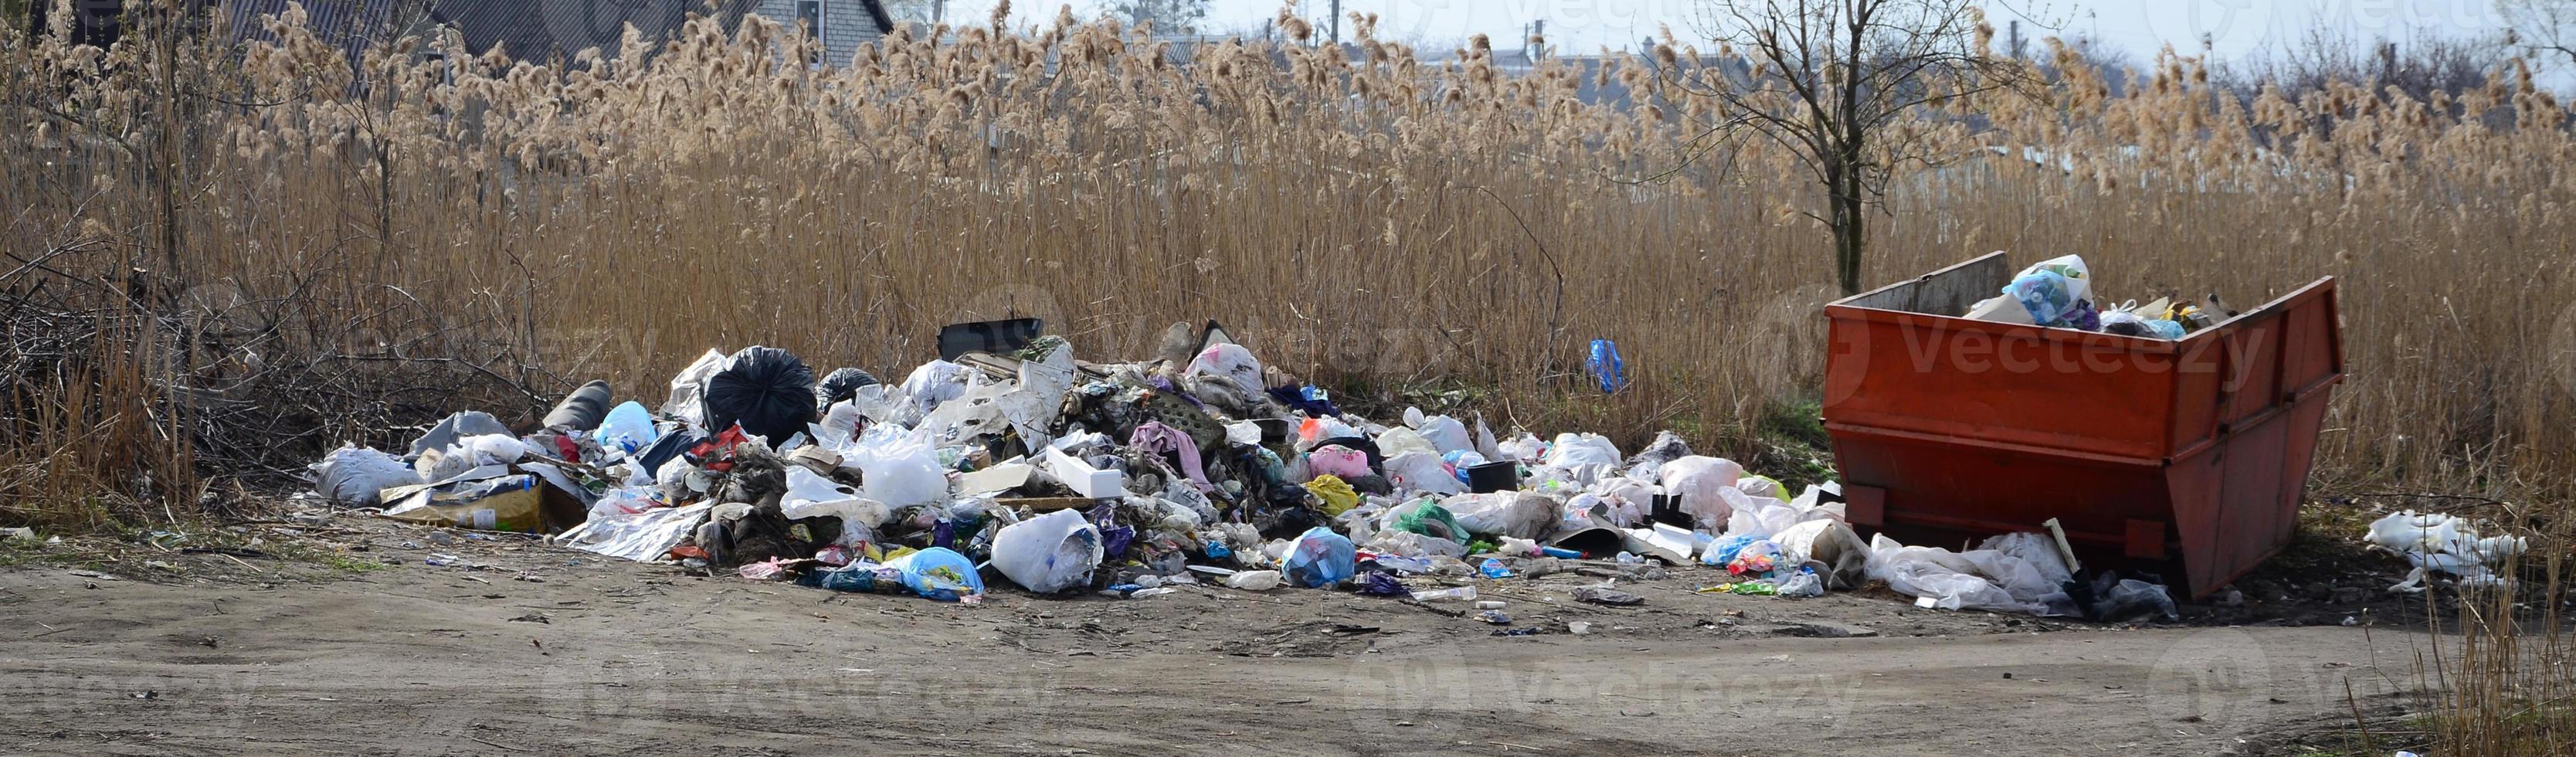 la poubelle est remplie d'ordures et de déchets. enlèvement intempestif des ordures dans les zones peuplées photo